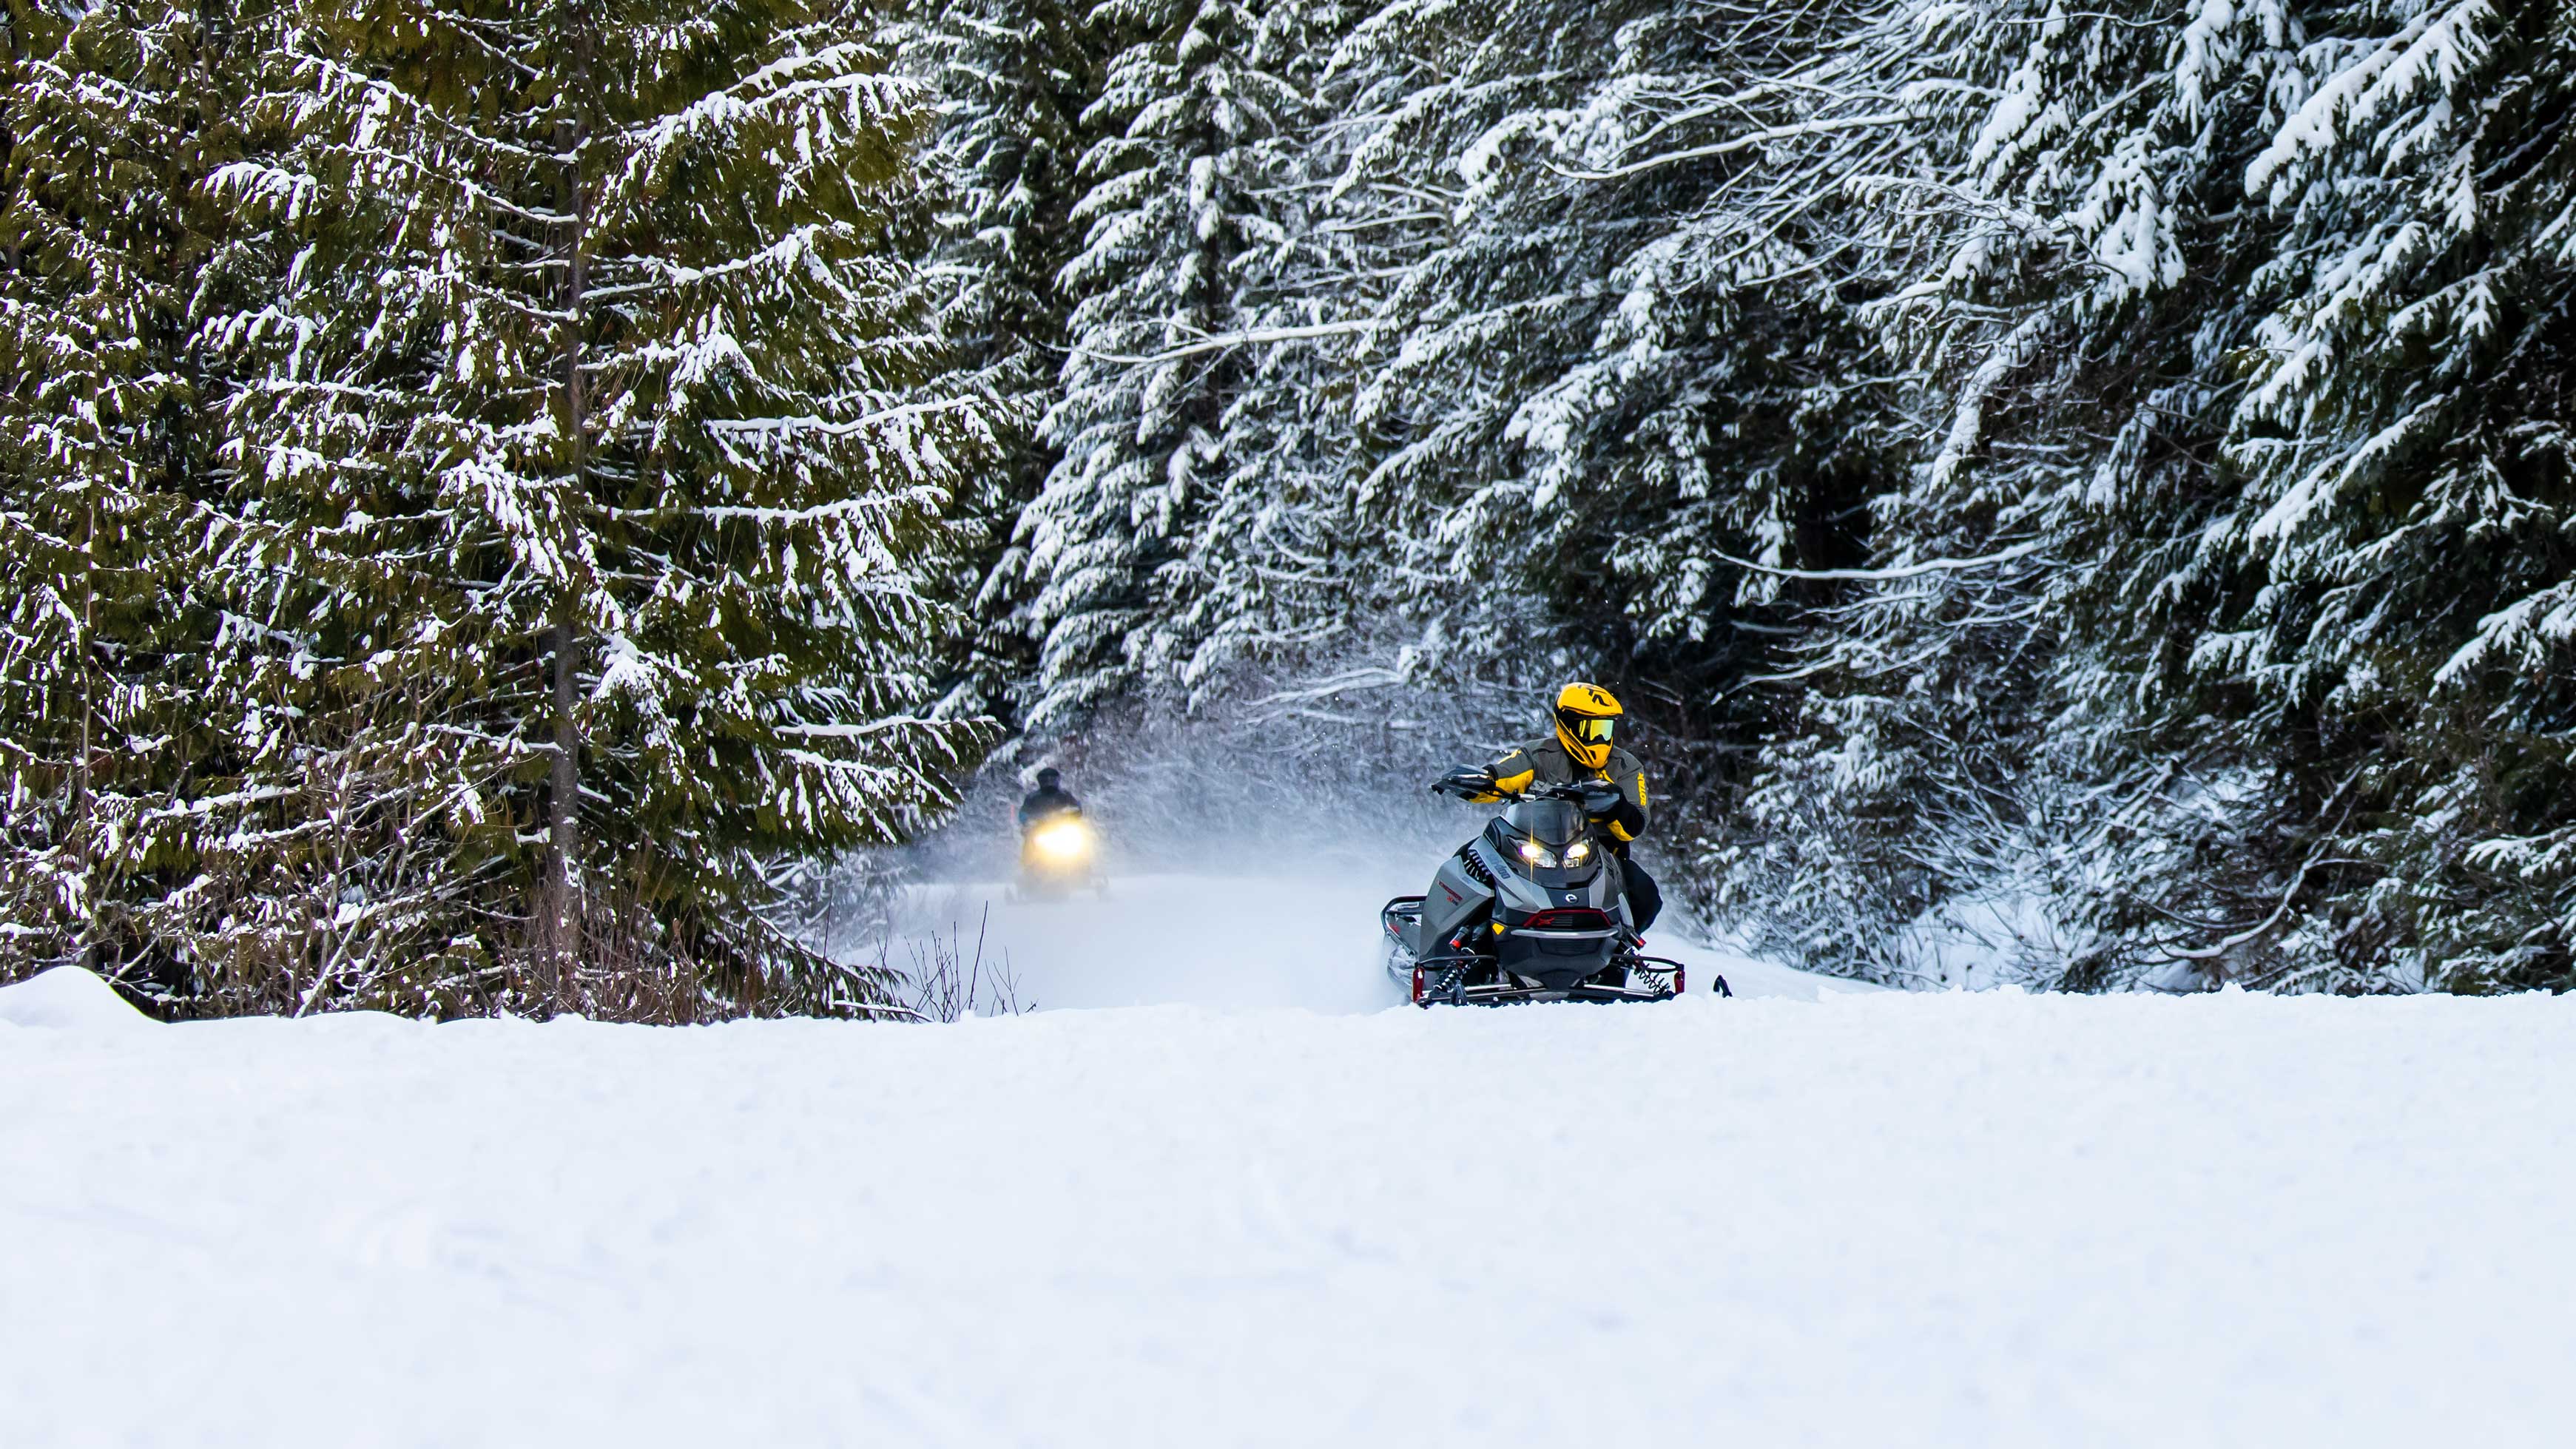 Ski-Doo kjører på en sti i en snødekt skog.